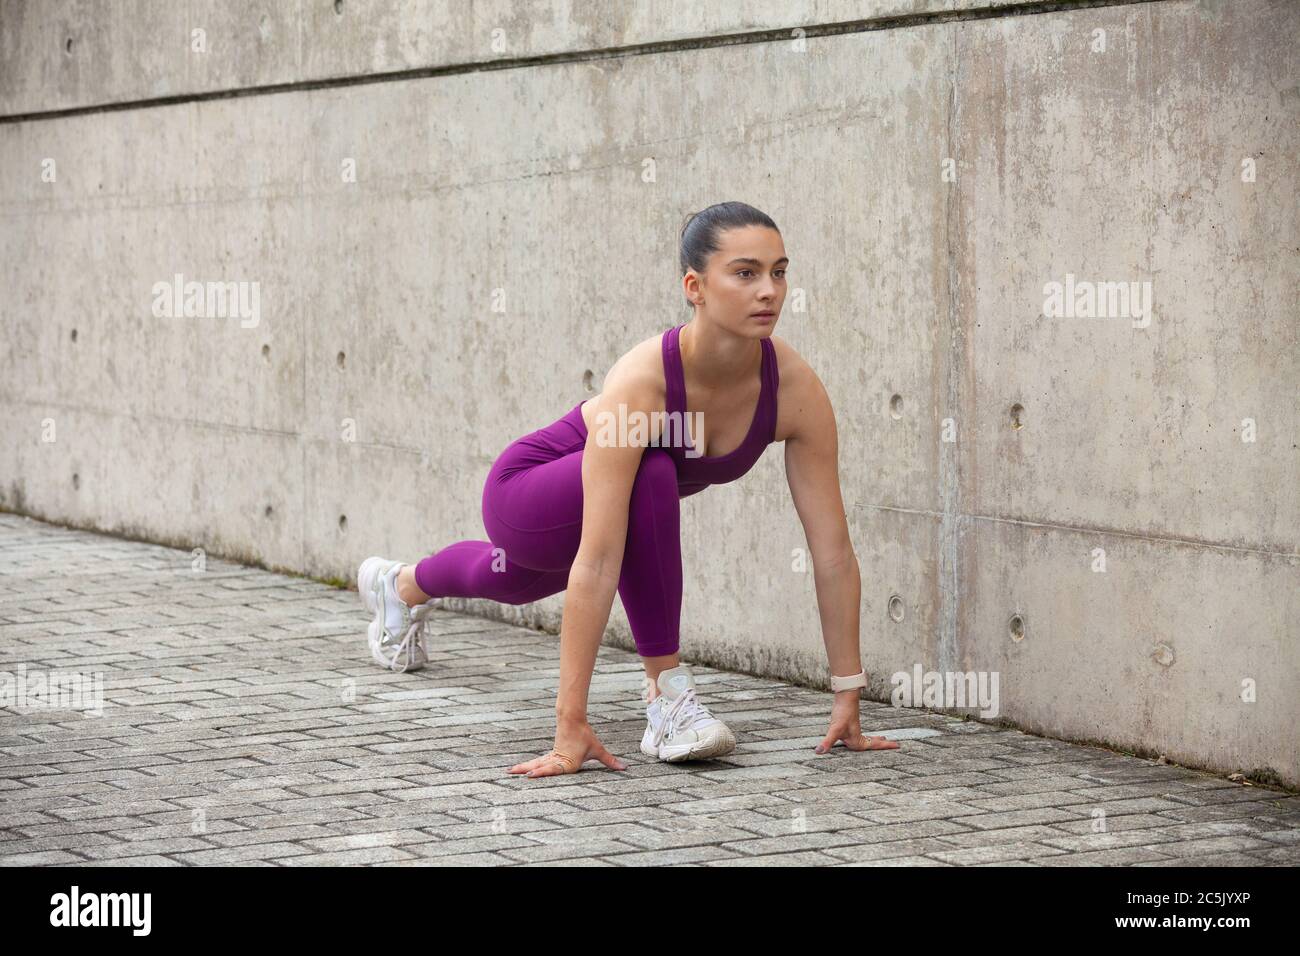 Junge Frau, die ihre Beine vor einem Training streckt. Stockfoto